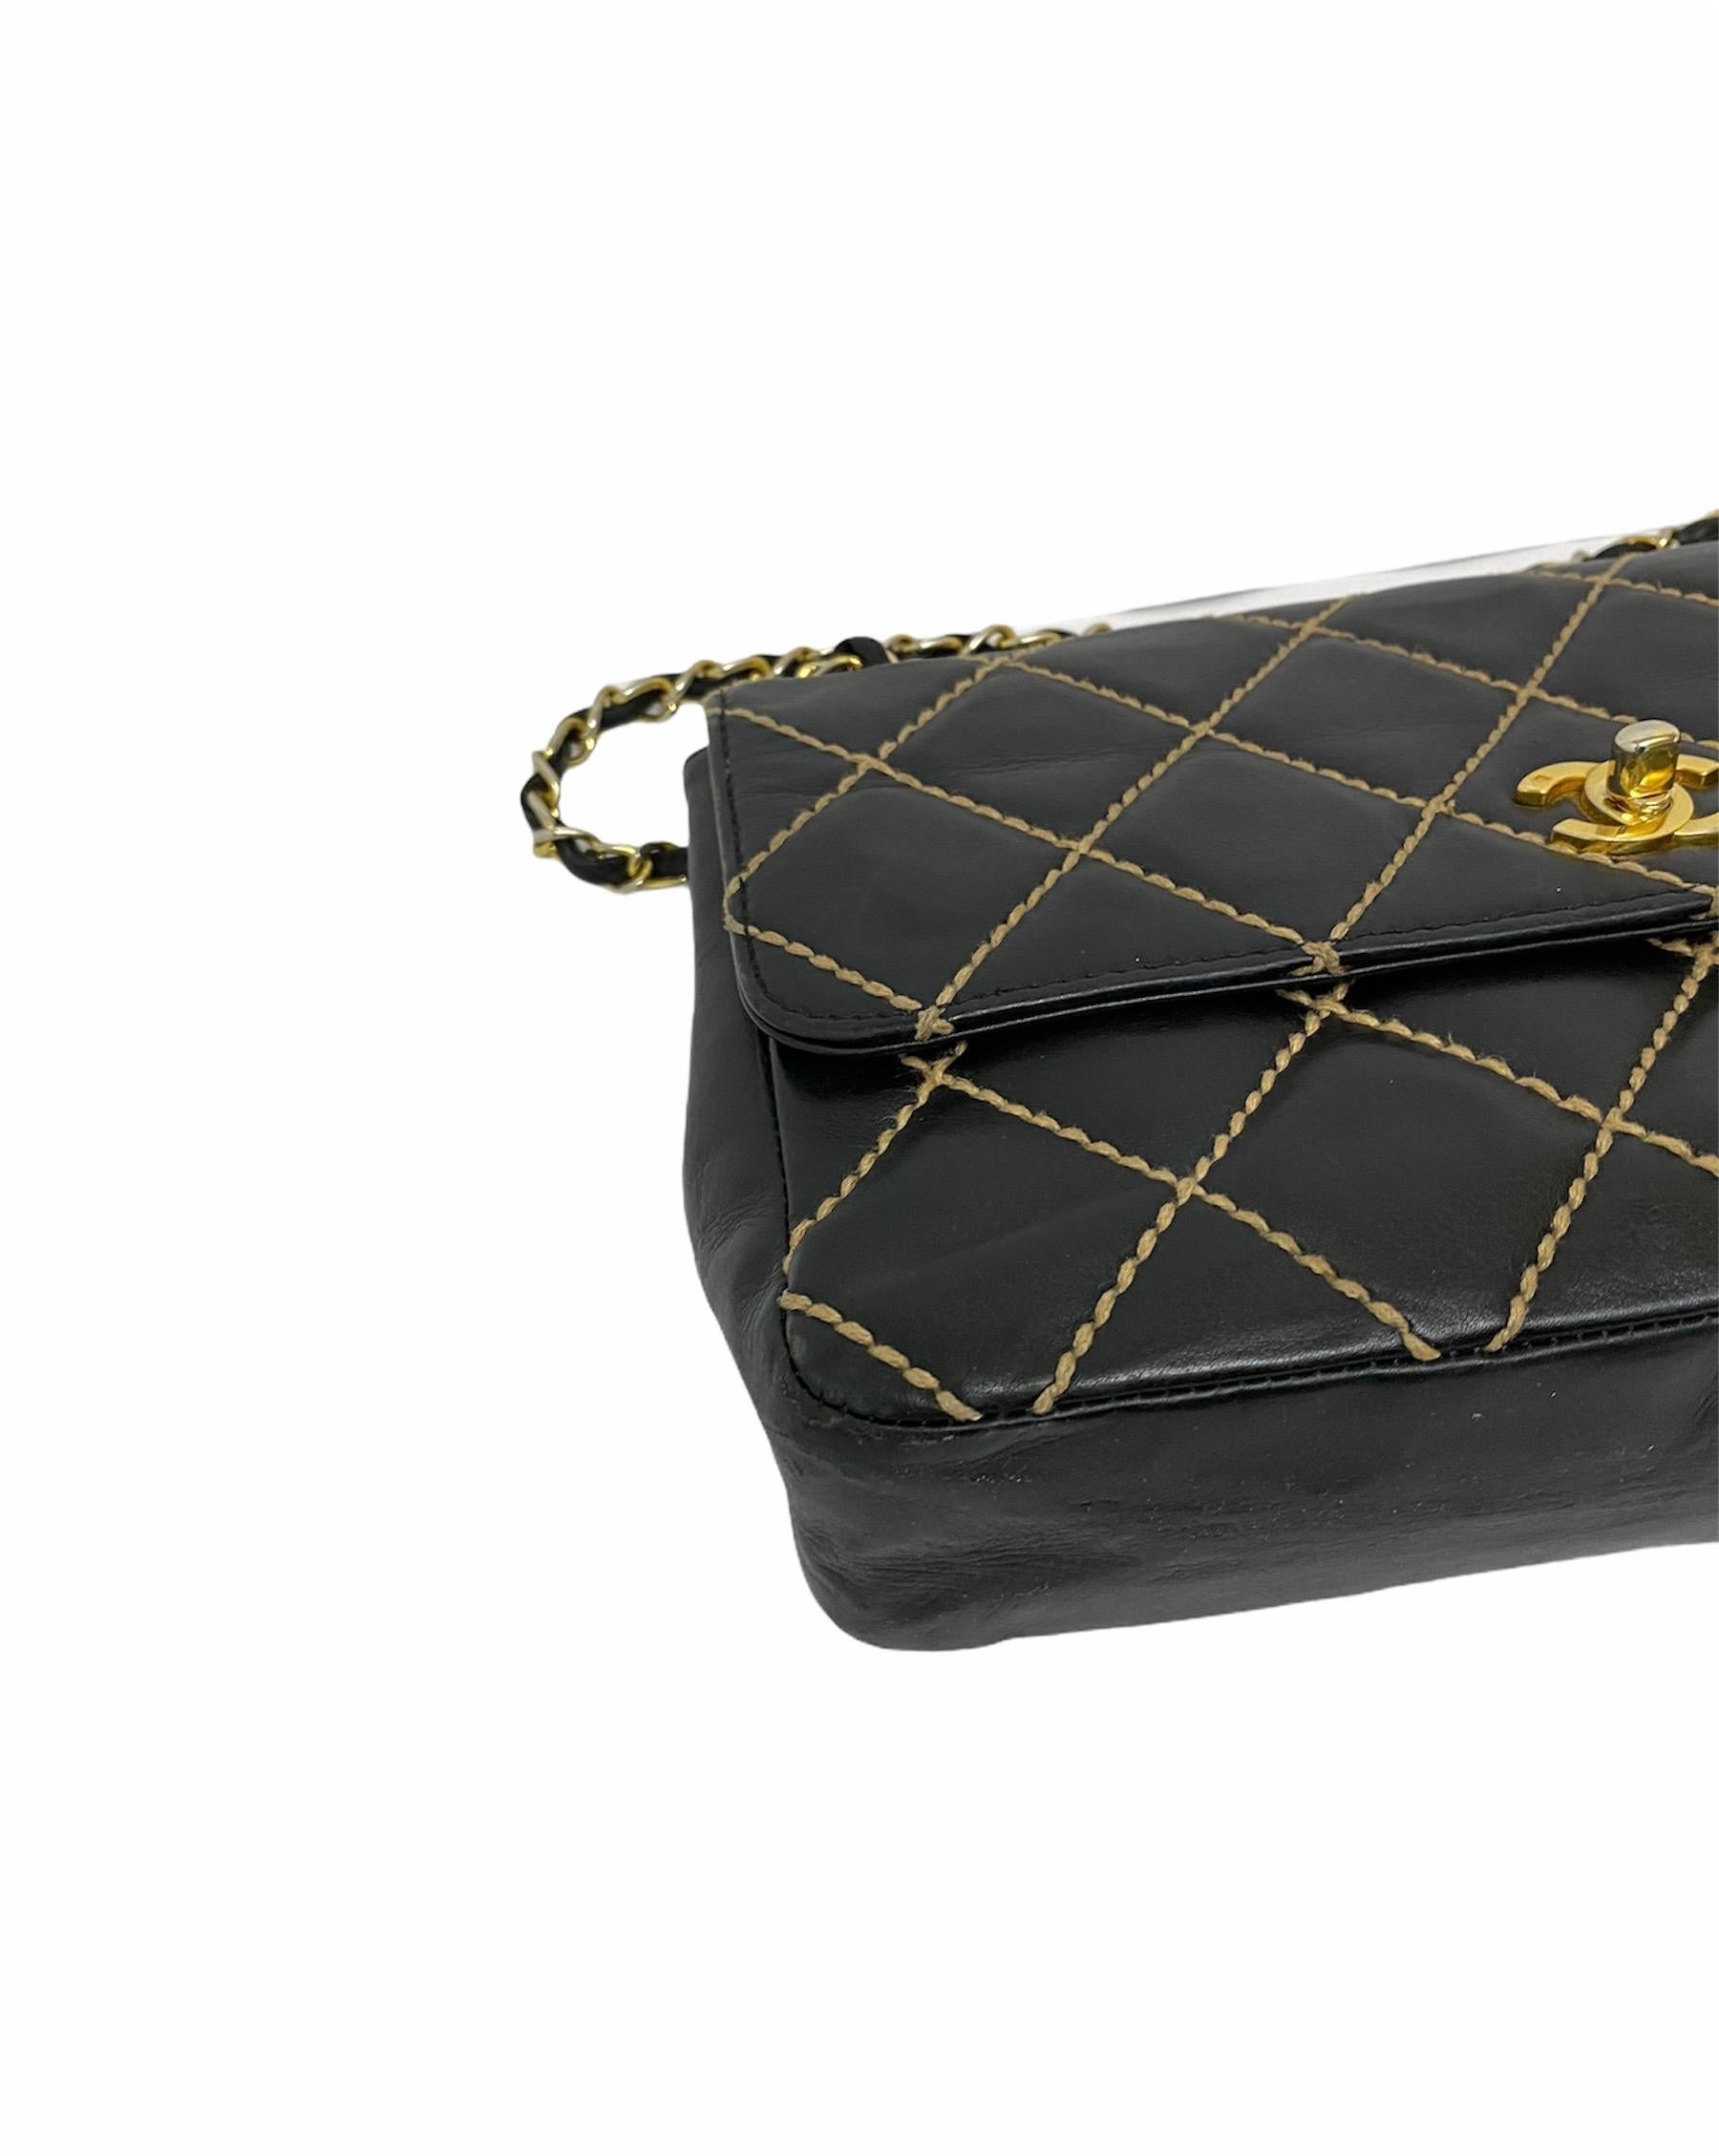 Chanel Black Leather Bag 4